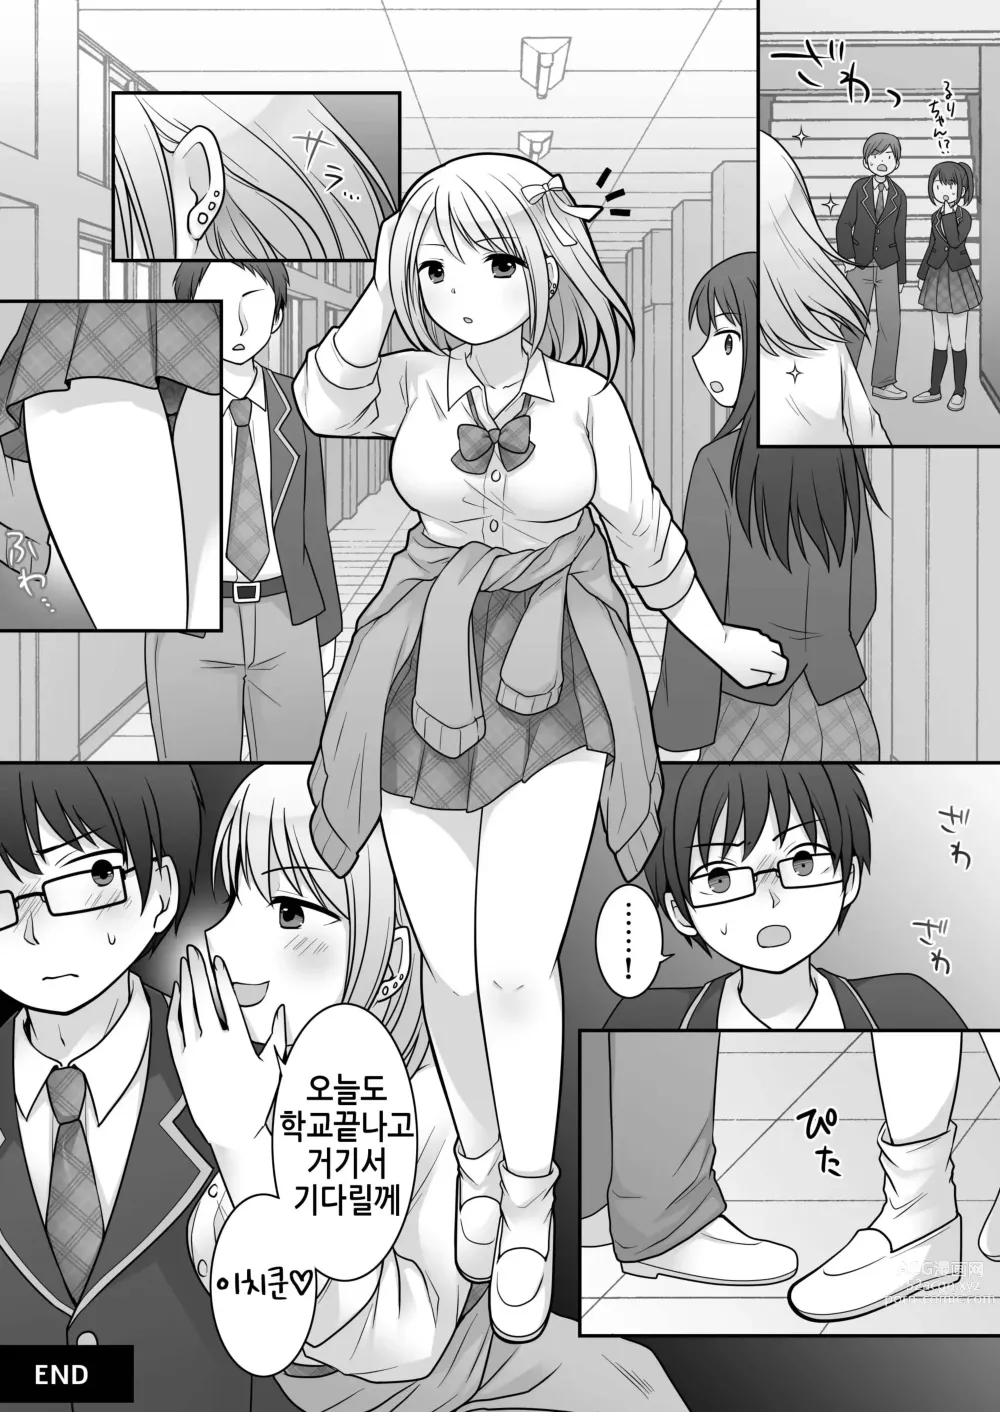 Page 31 of doujinshi 불량 in 그녀 내 여자친구의 몸뚱이는 불량남에게 납치되었다.